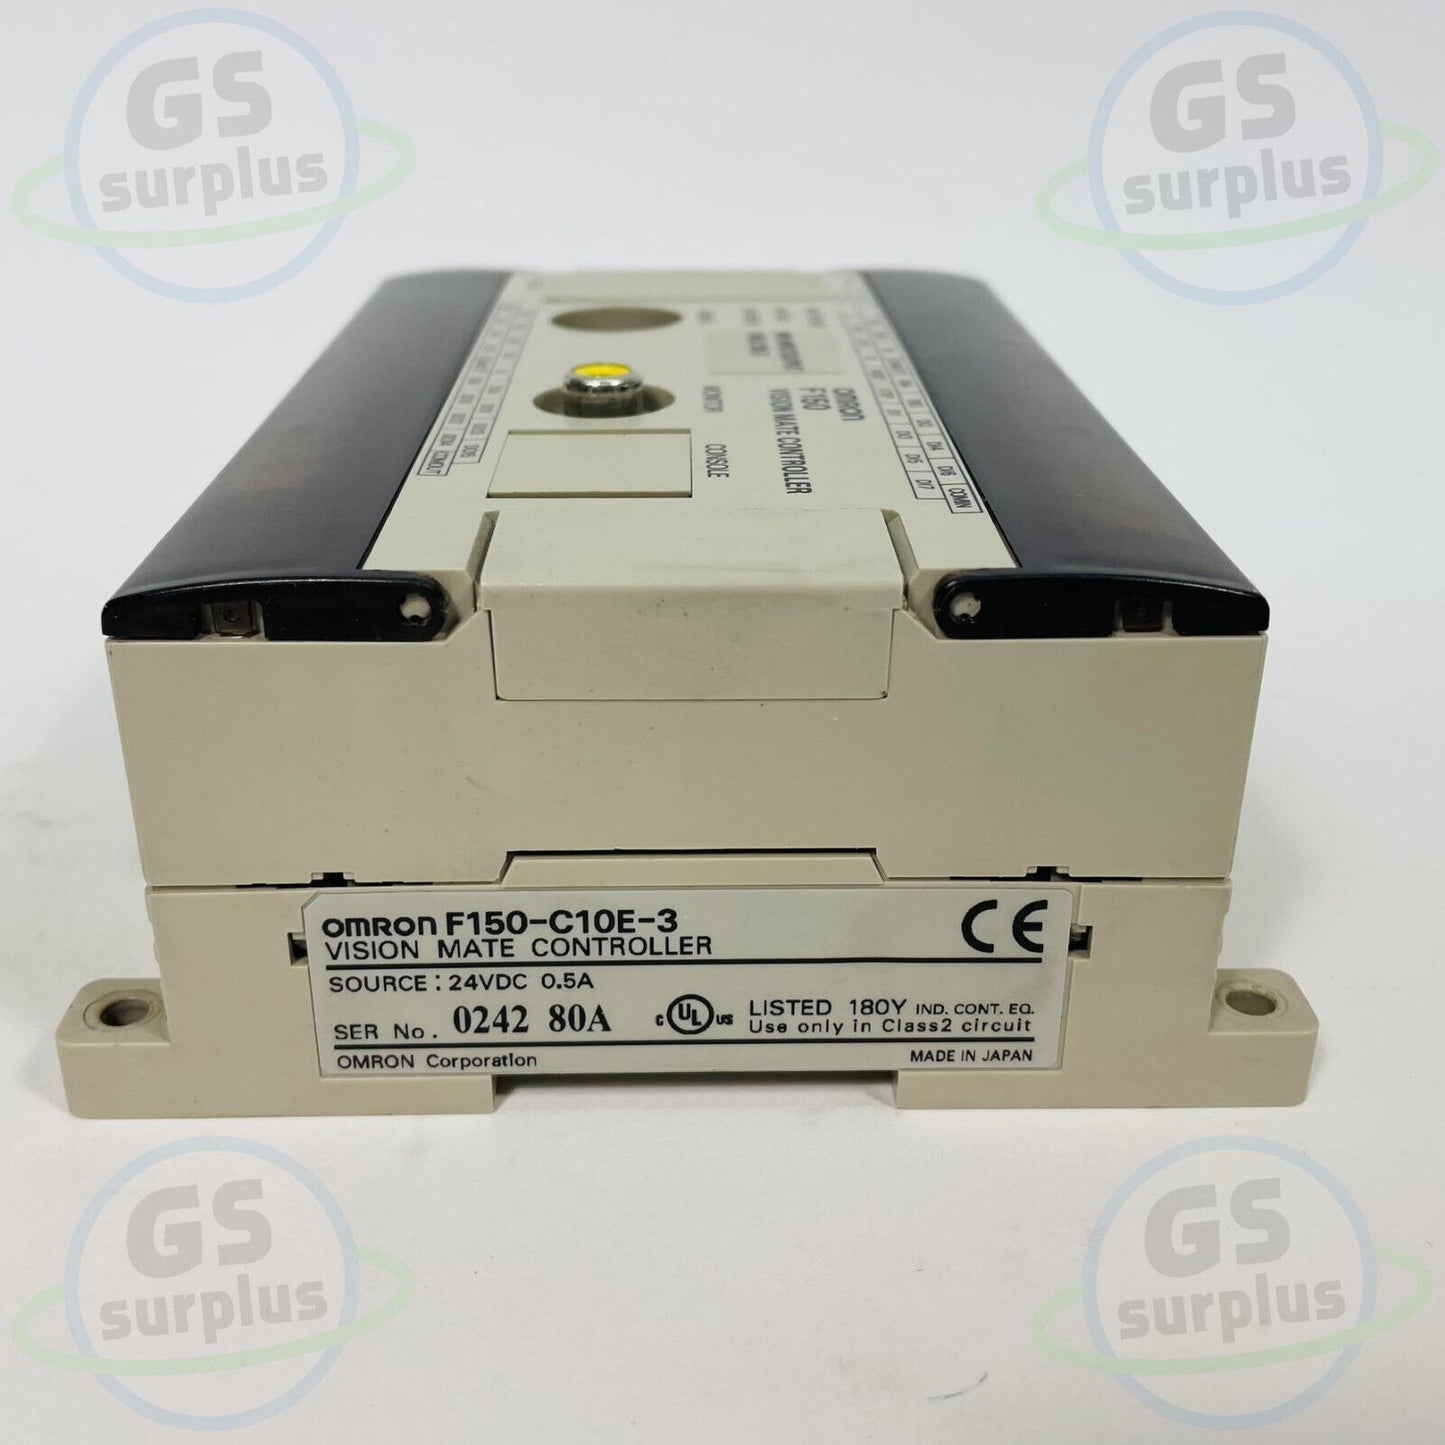 Omron F150-C10E-3 / F150C10E3 Vision Mate Controller 24 VDC